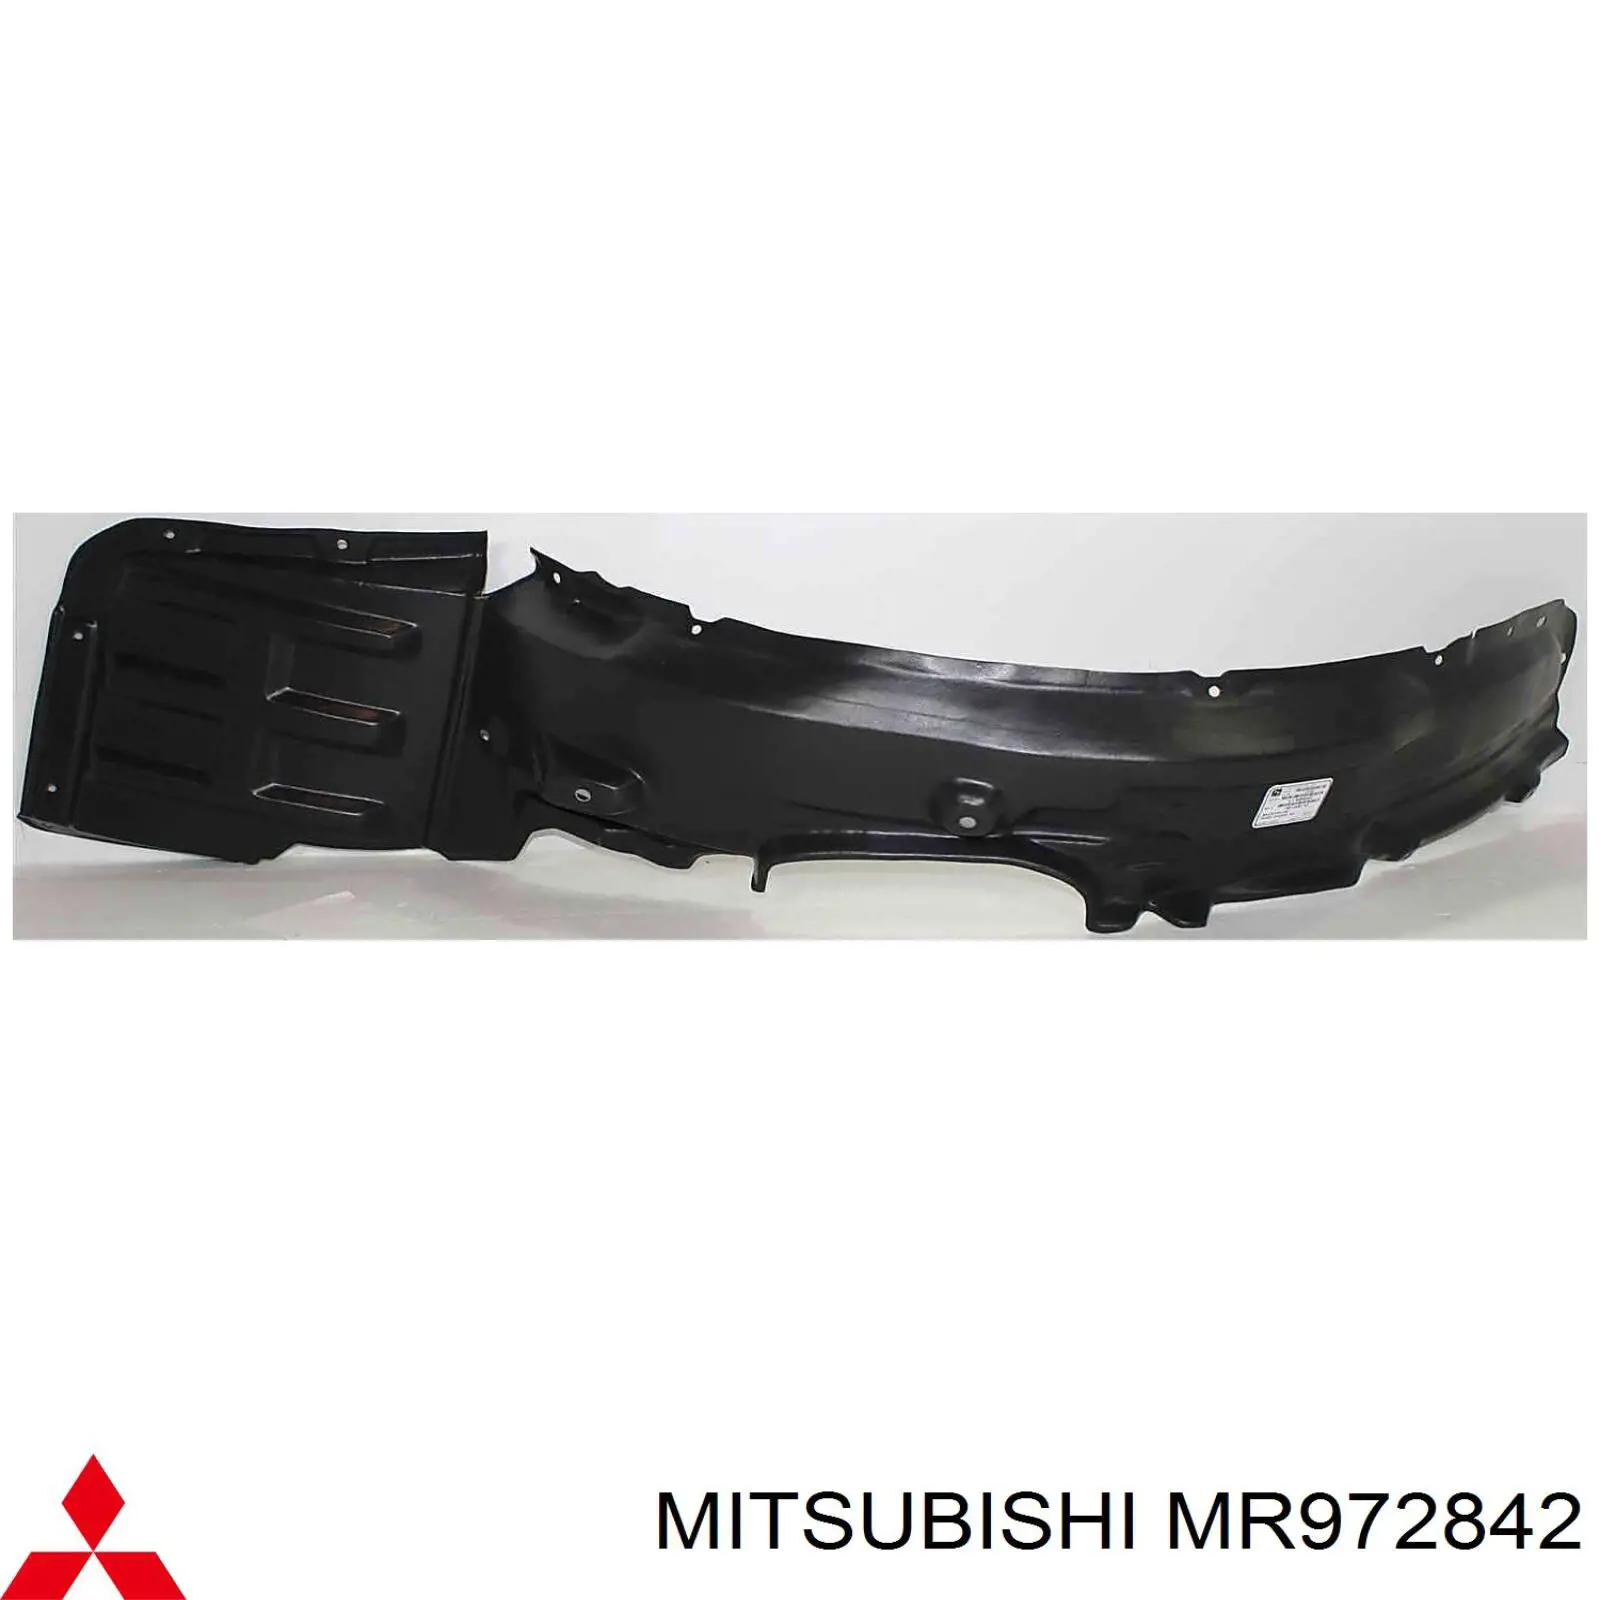 MR972842 Mitsubishi guardabarros interior, aleta delantera, derecho